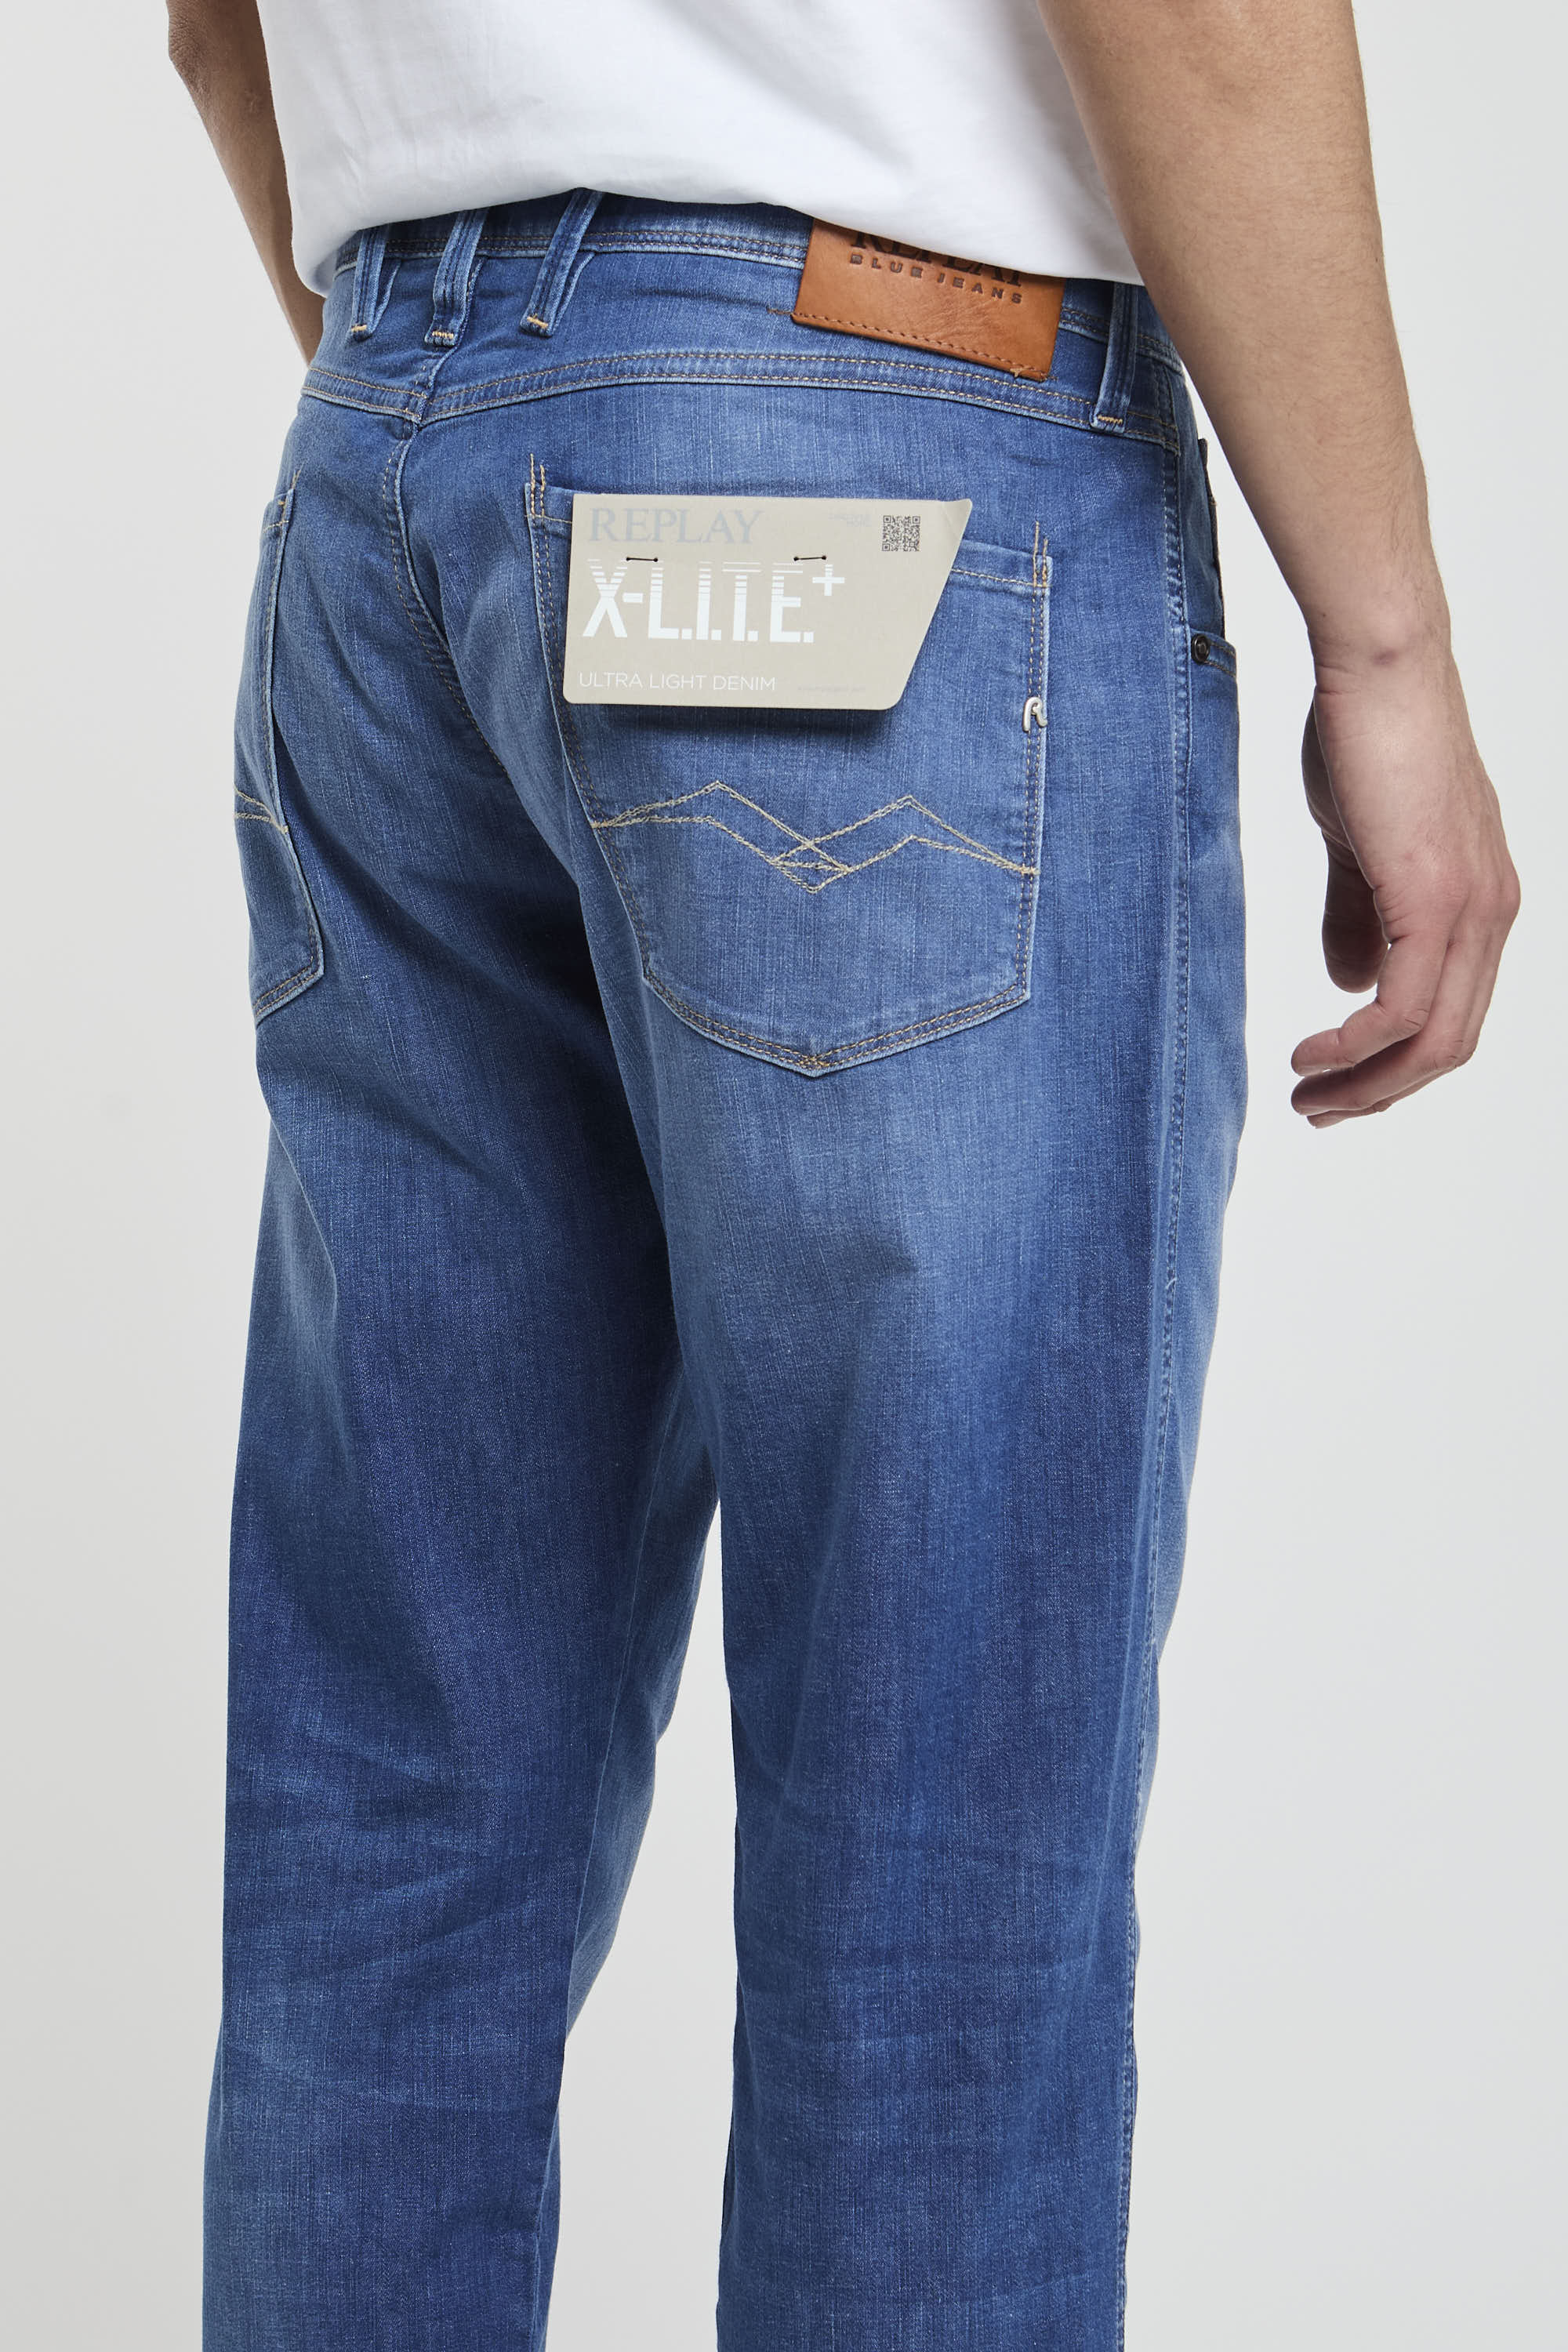 Replay Jeans Slim Fit aus Denim in Baumwolle/Lyocell/Elastomultiester/Elasthan-6